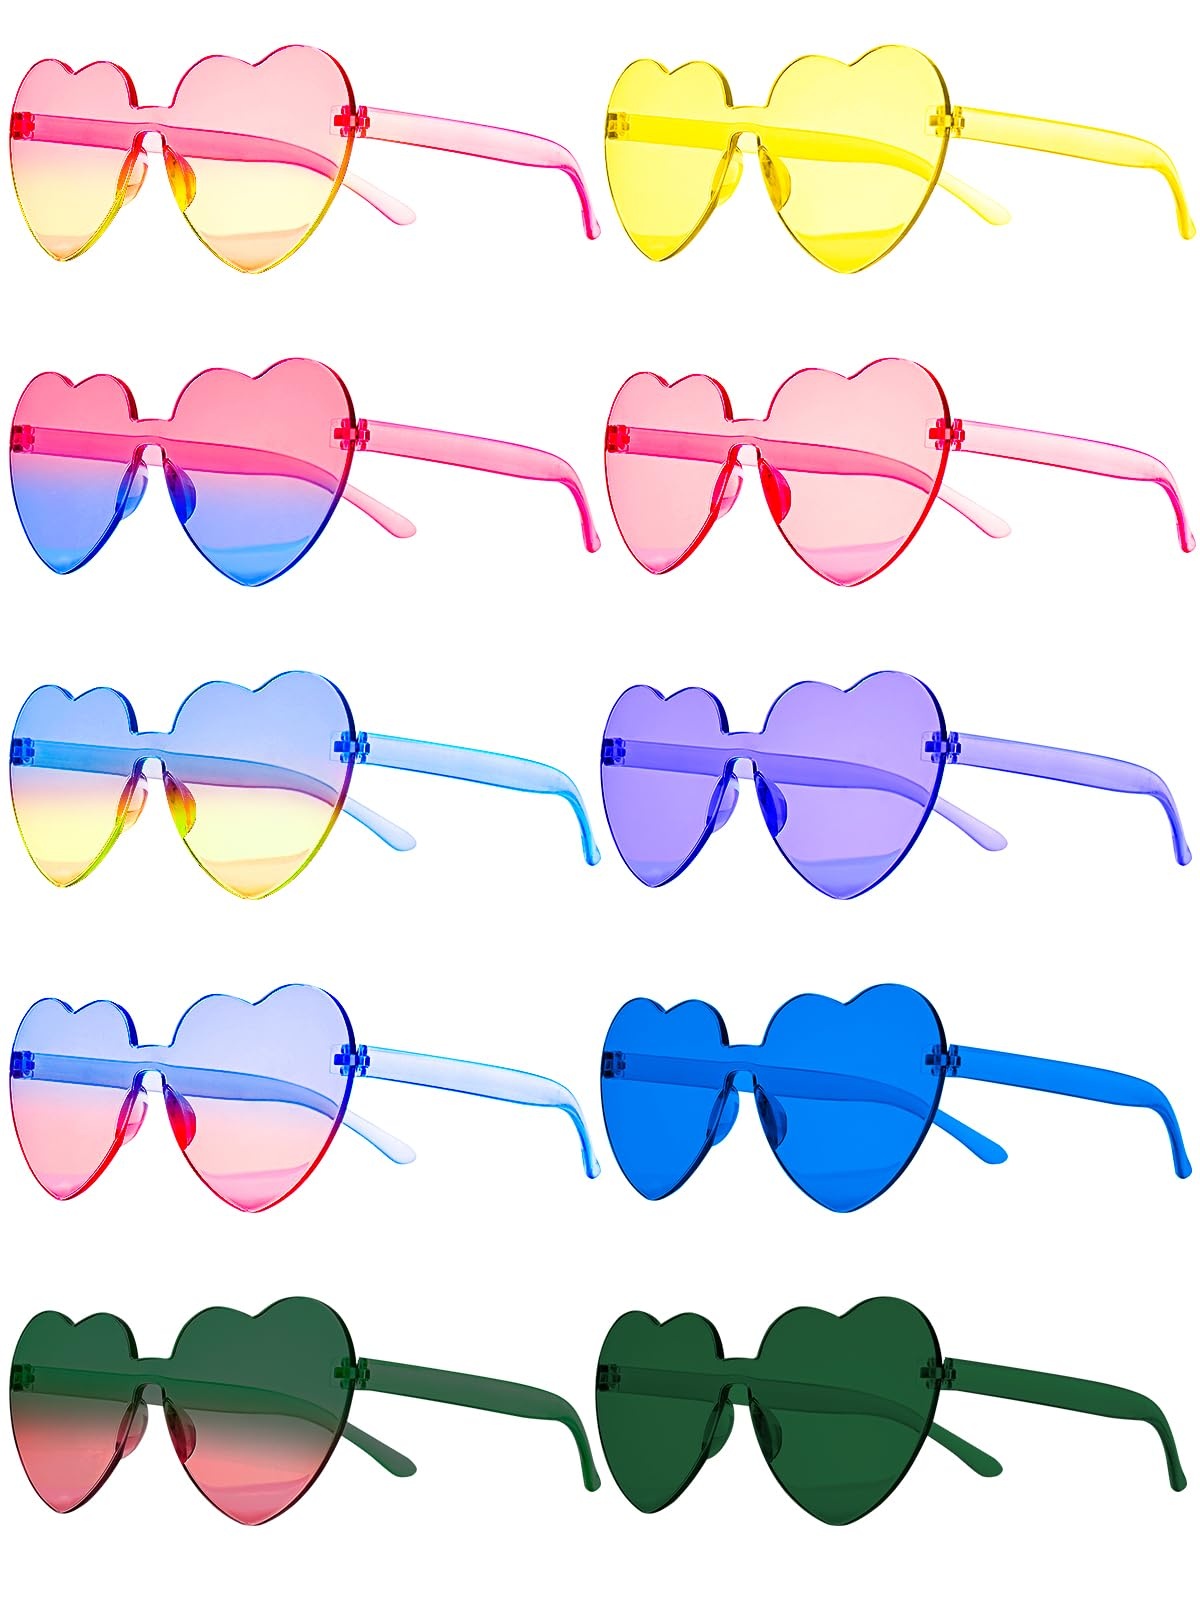 Hengxinc 10 Paar Herz Sonnenbrille Farbe Herzbrille Herzbrille Party Sonnenbrille Randlose Partybrillen Hippie Sonnenbrille Herzform Heart Sunglasses für Geburtstagsparty Carnival Beach (Farbverlauf)